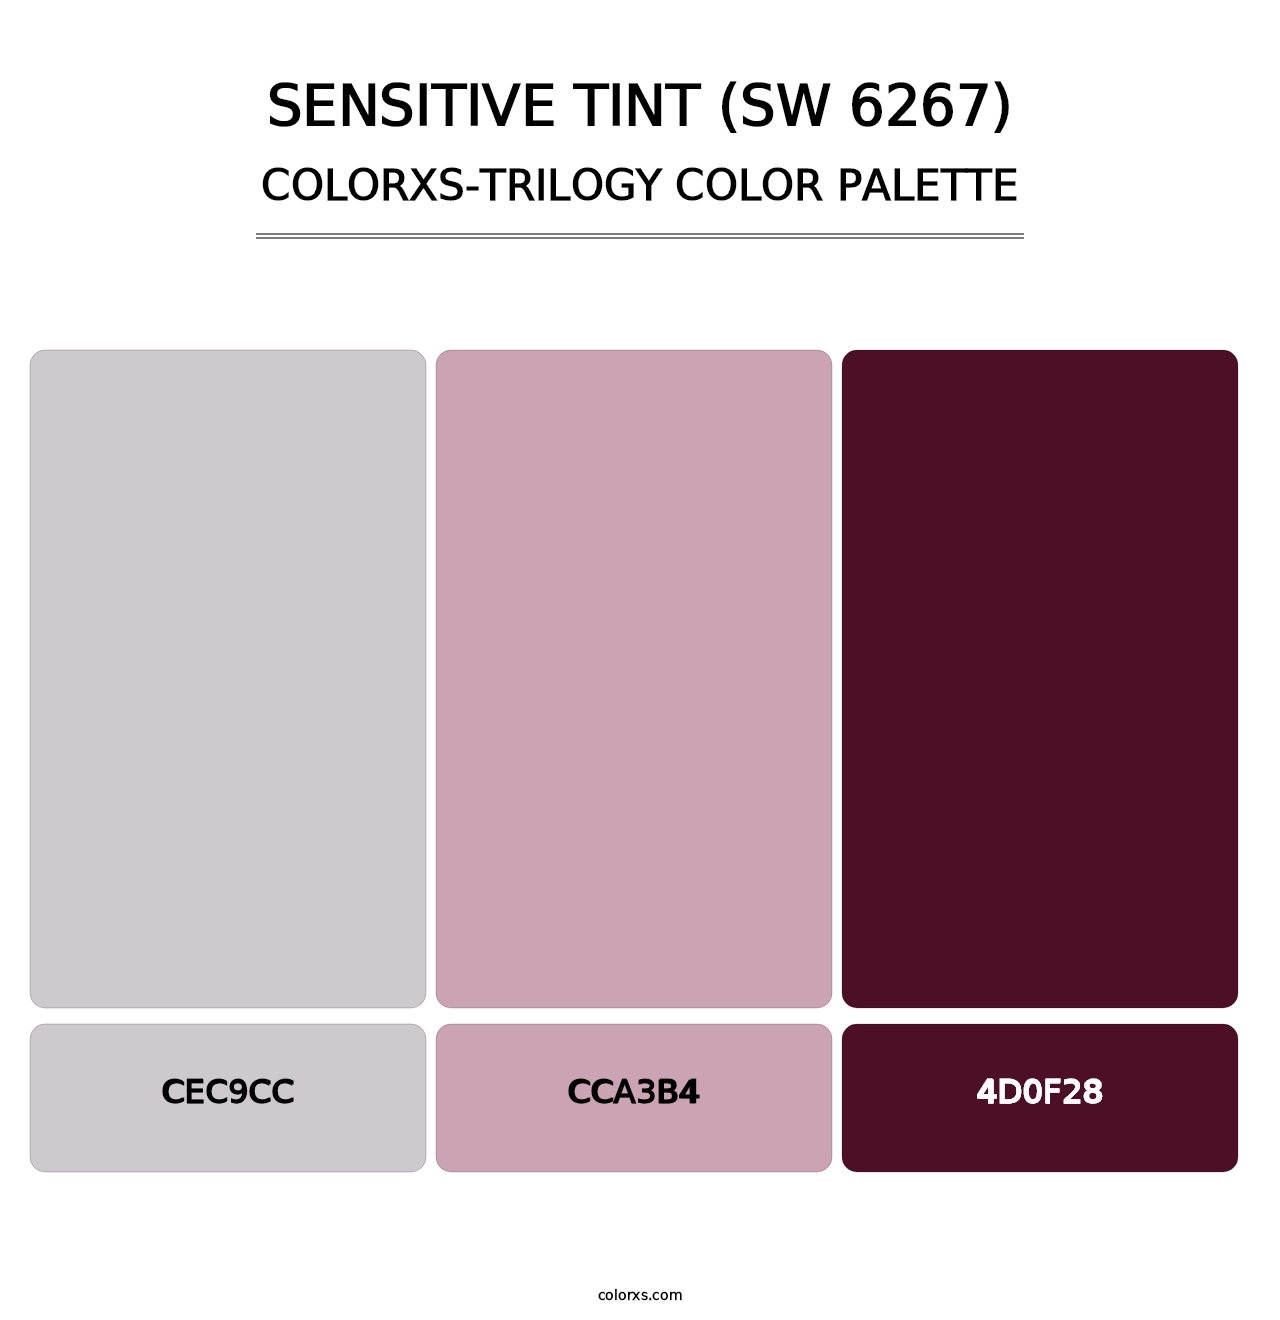 Sensitive Tint (SW 6267) - Colorxs Trilogy Palette